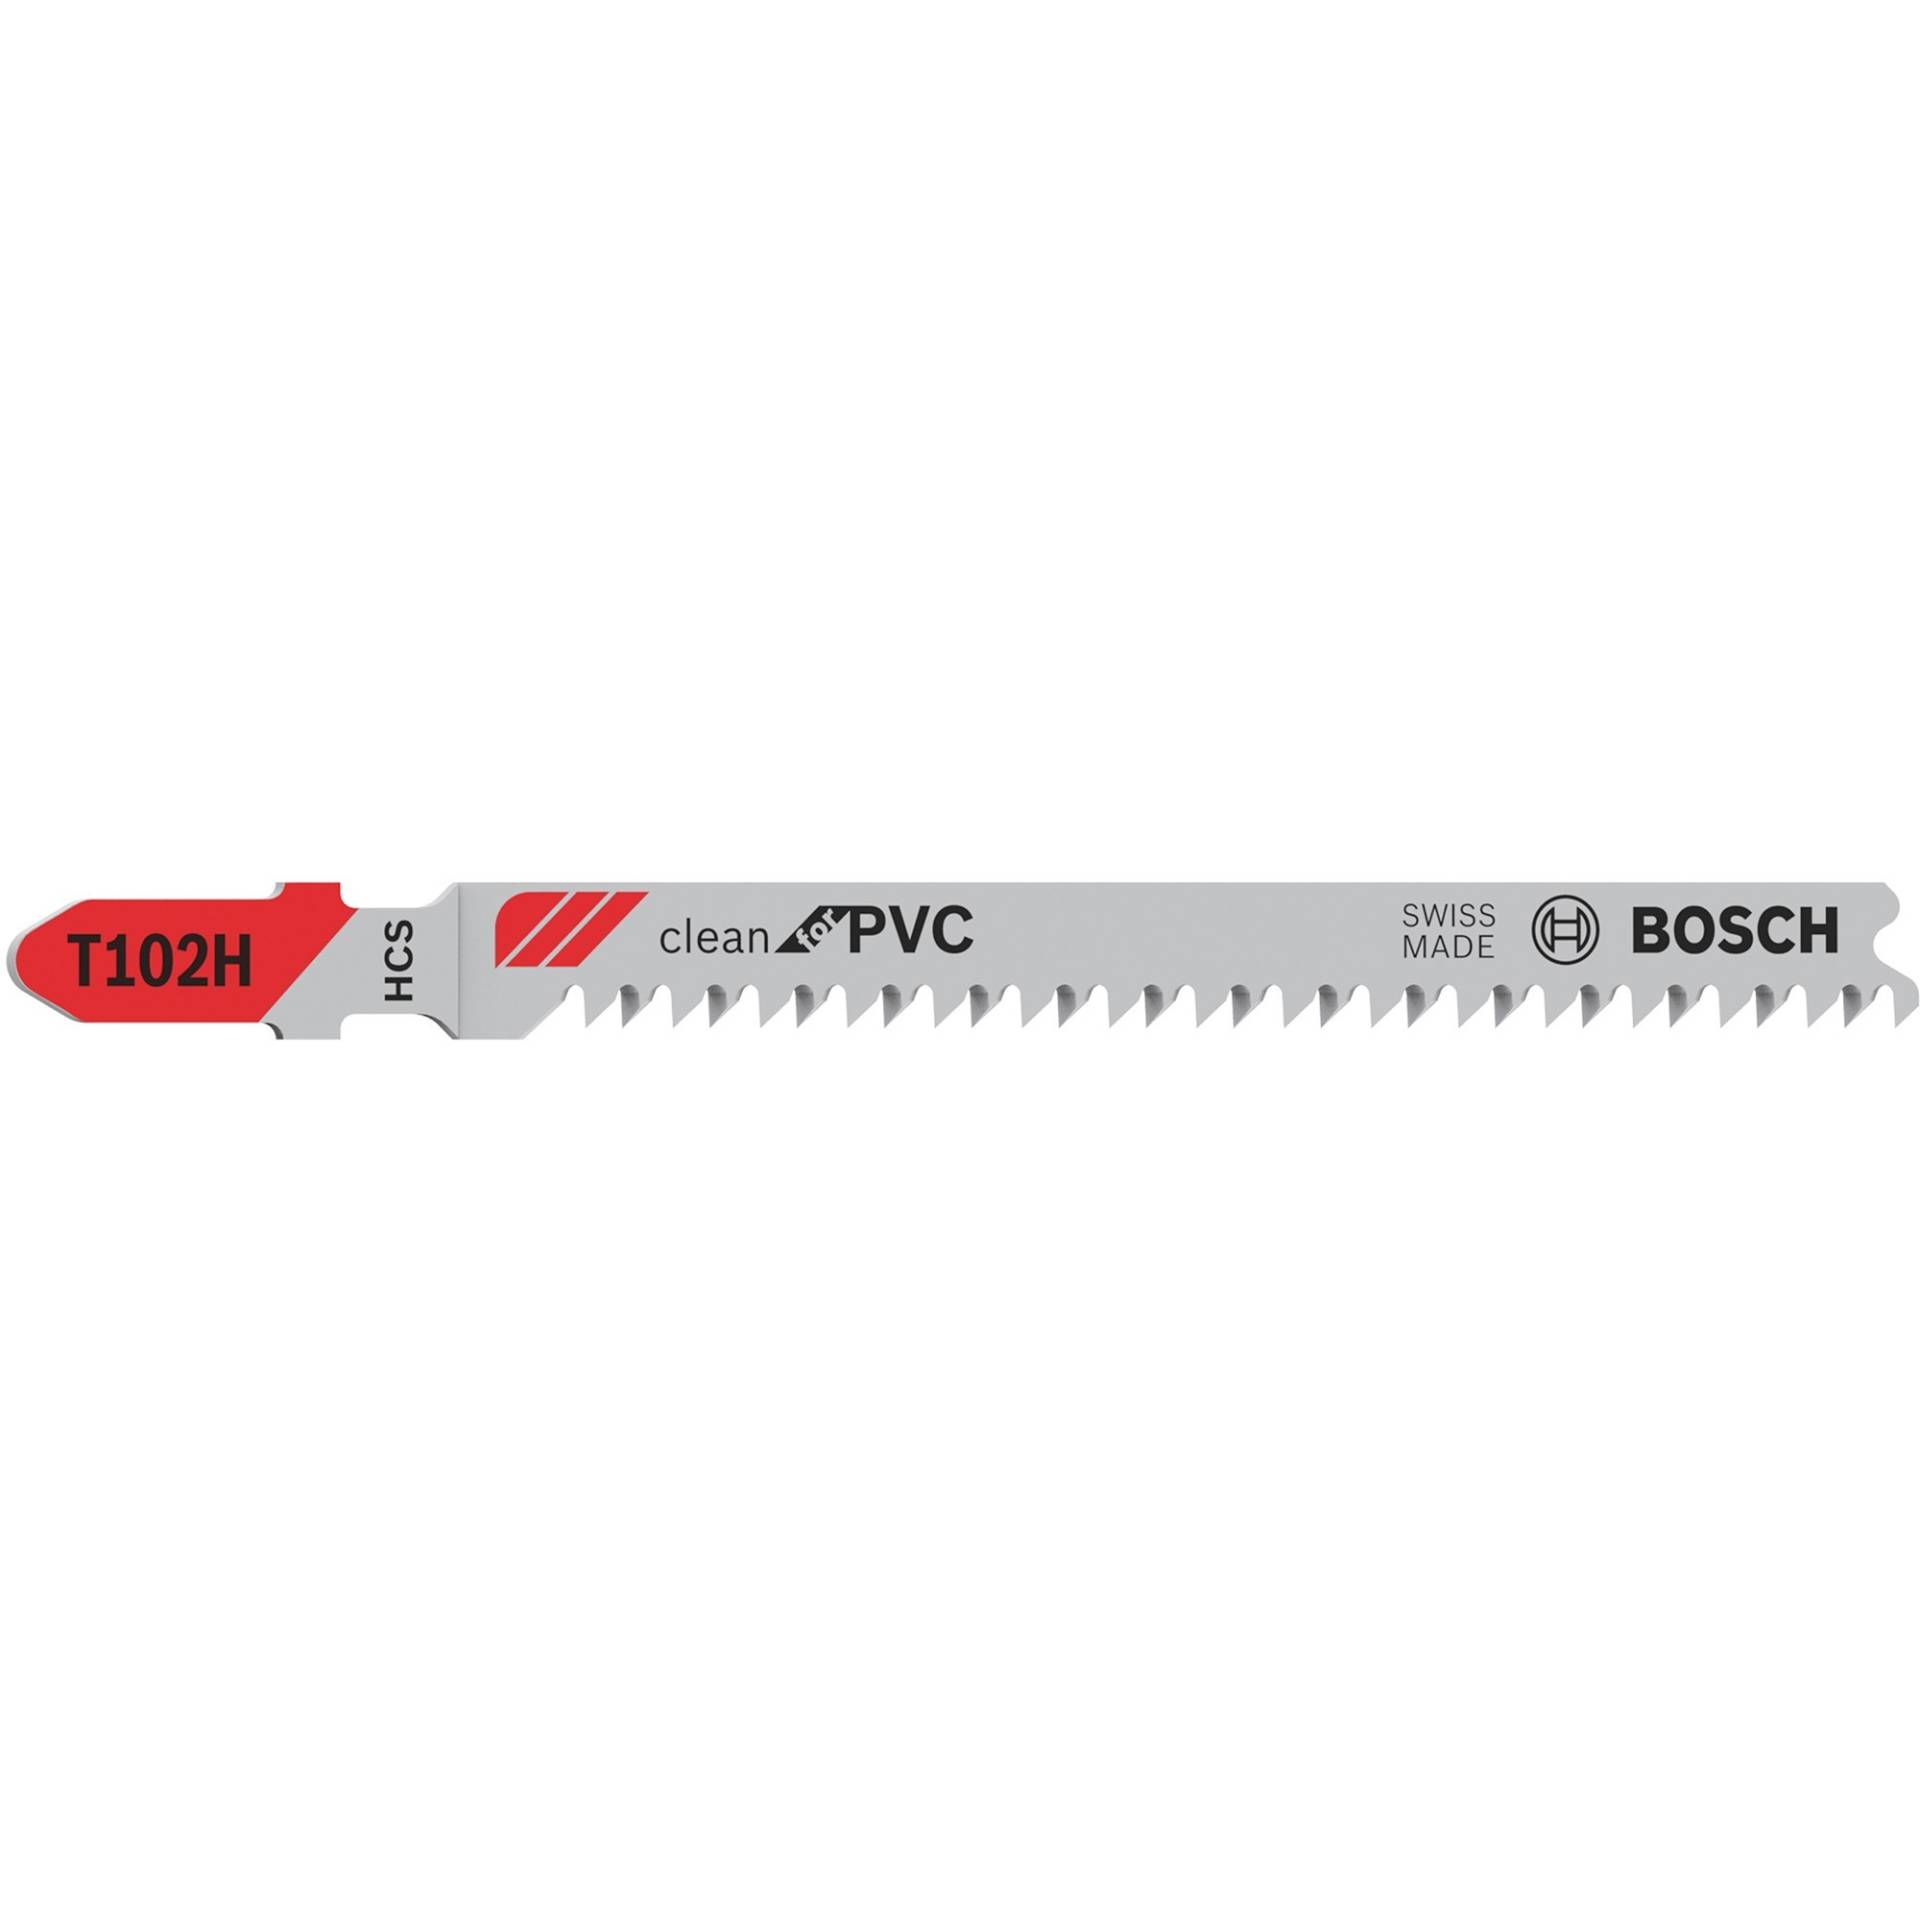 Stichsägeblatt T 102 H Clean for PVC, 100mm von Bosch